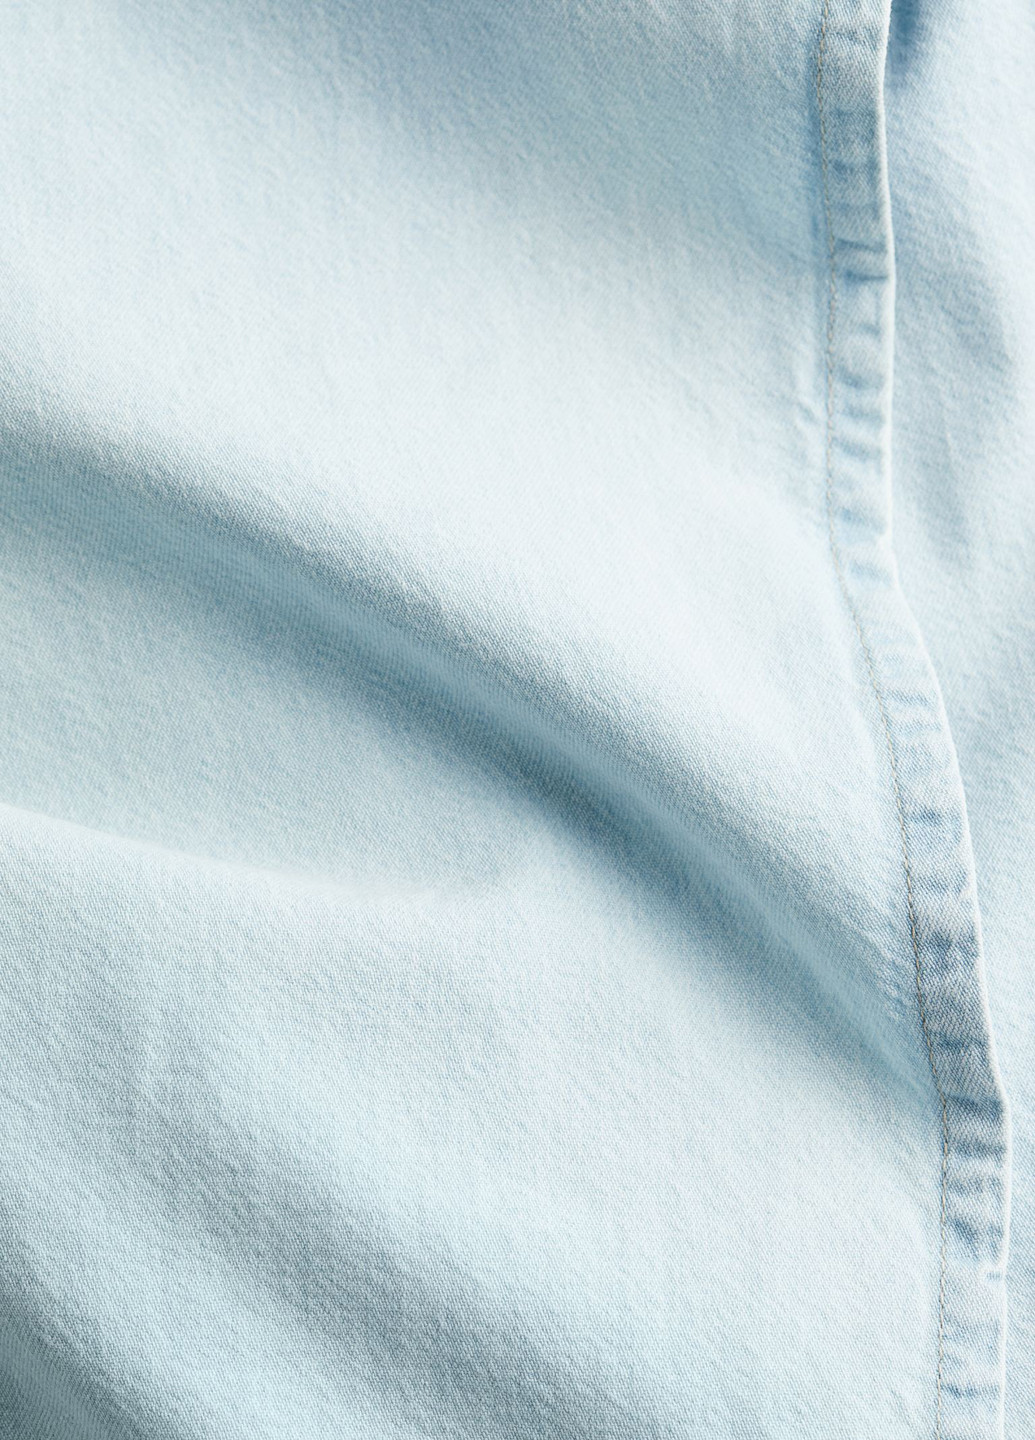 Светло-голубая джинсовая однотонная юбка H&M на запах